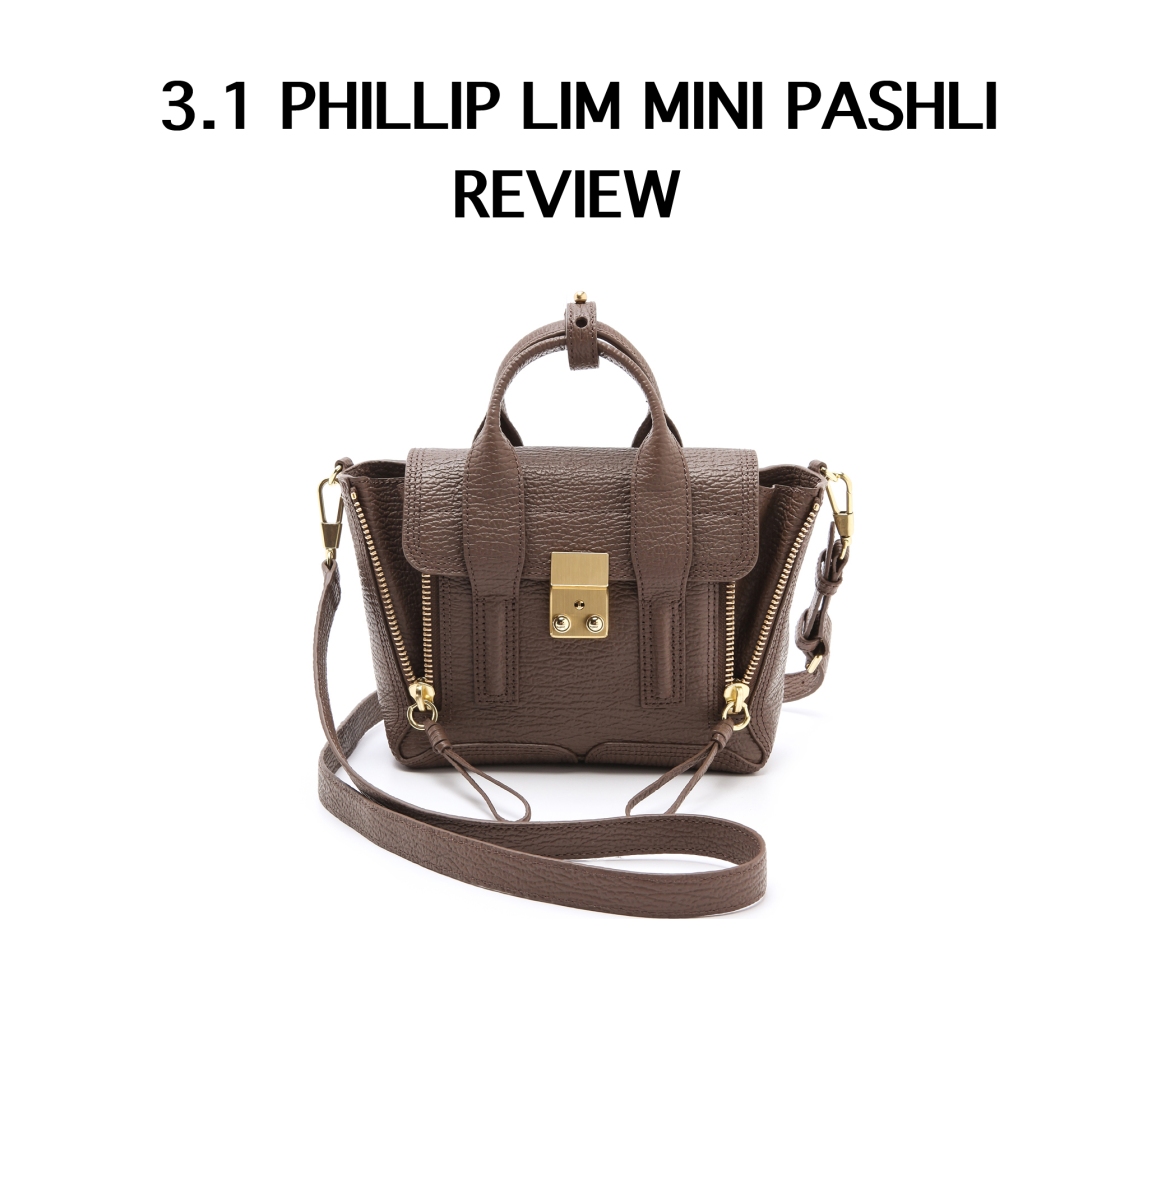 3.1 phillip lim pashli medium satchel review